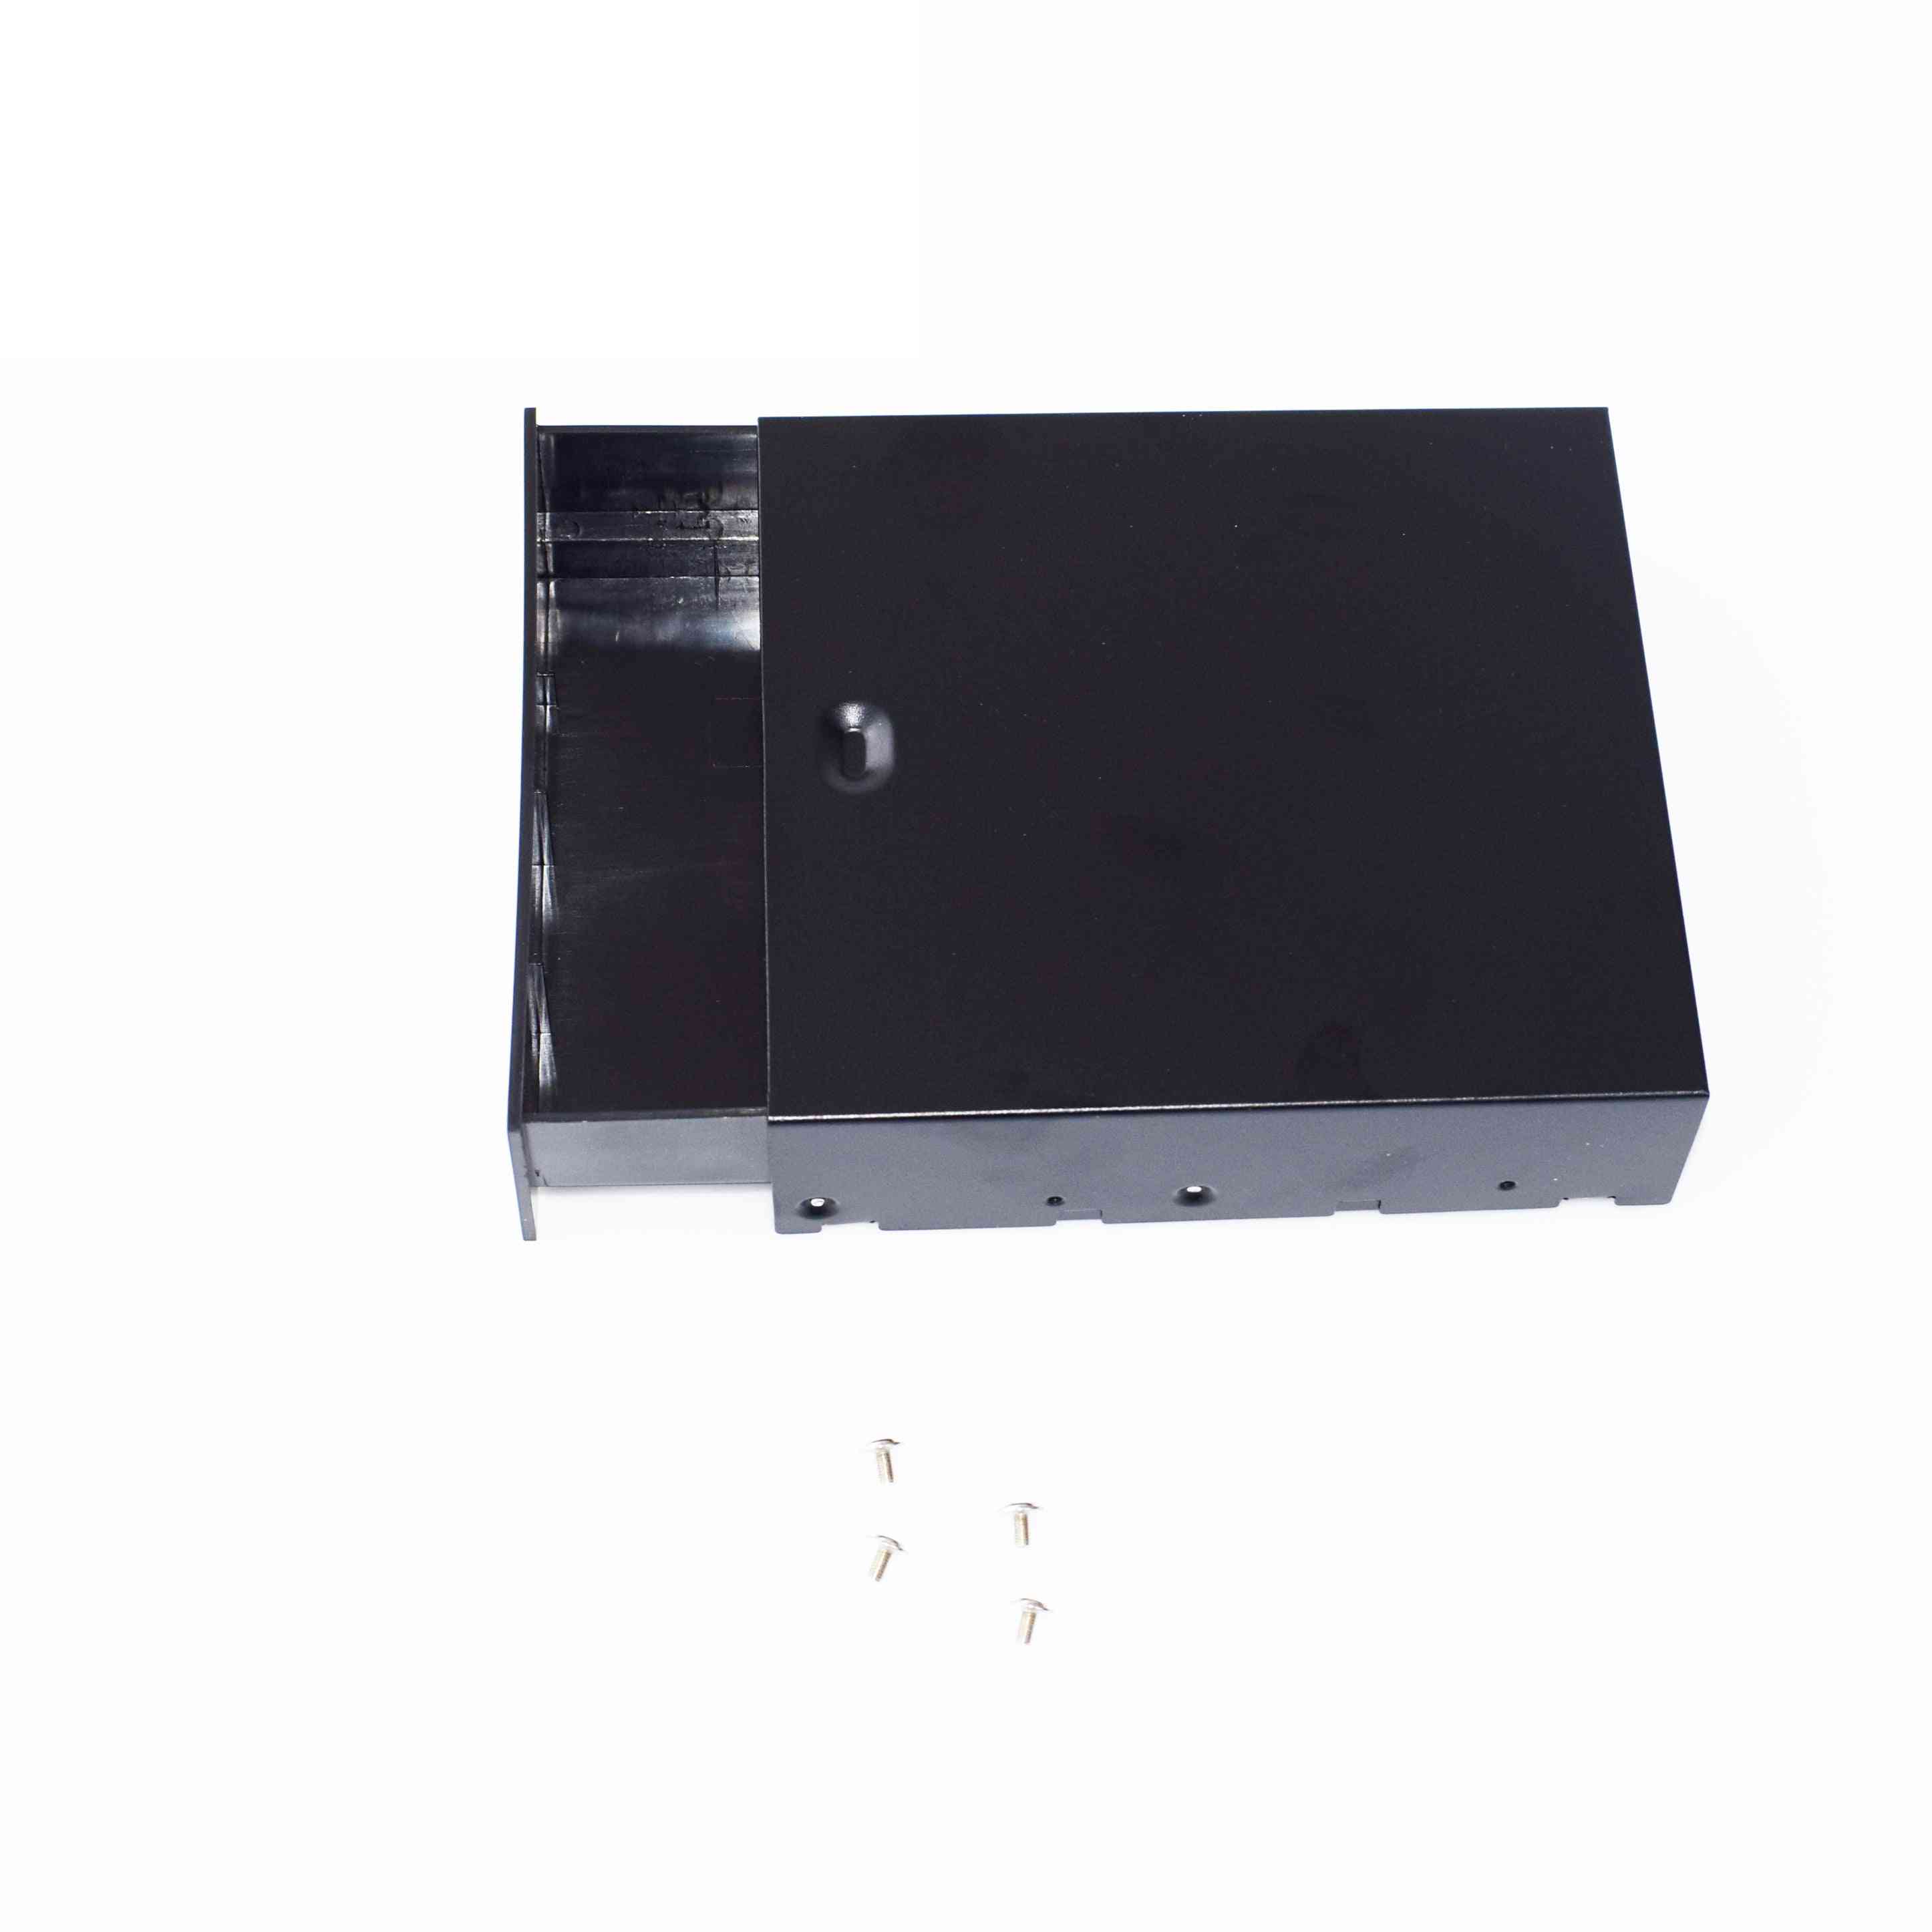 Noir ordinateur de bureau-atx / matx disque dur mobile-blank-rack tiroir plateau de stockage-case / boîte (5,25 